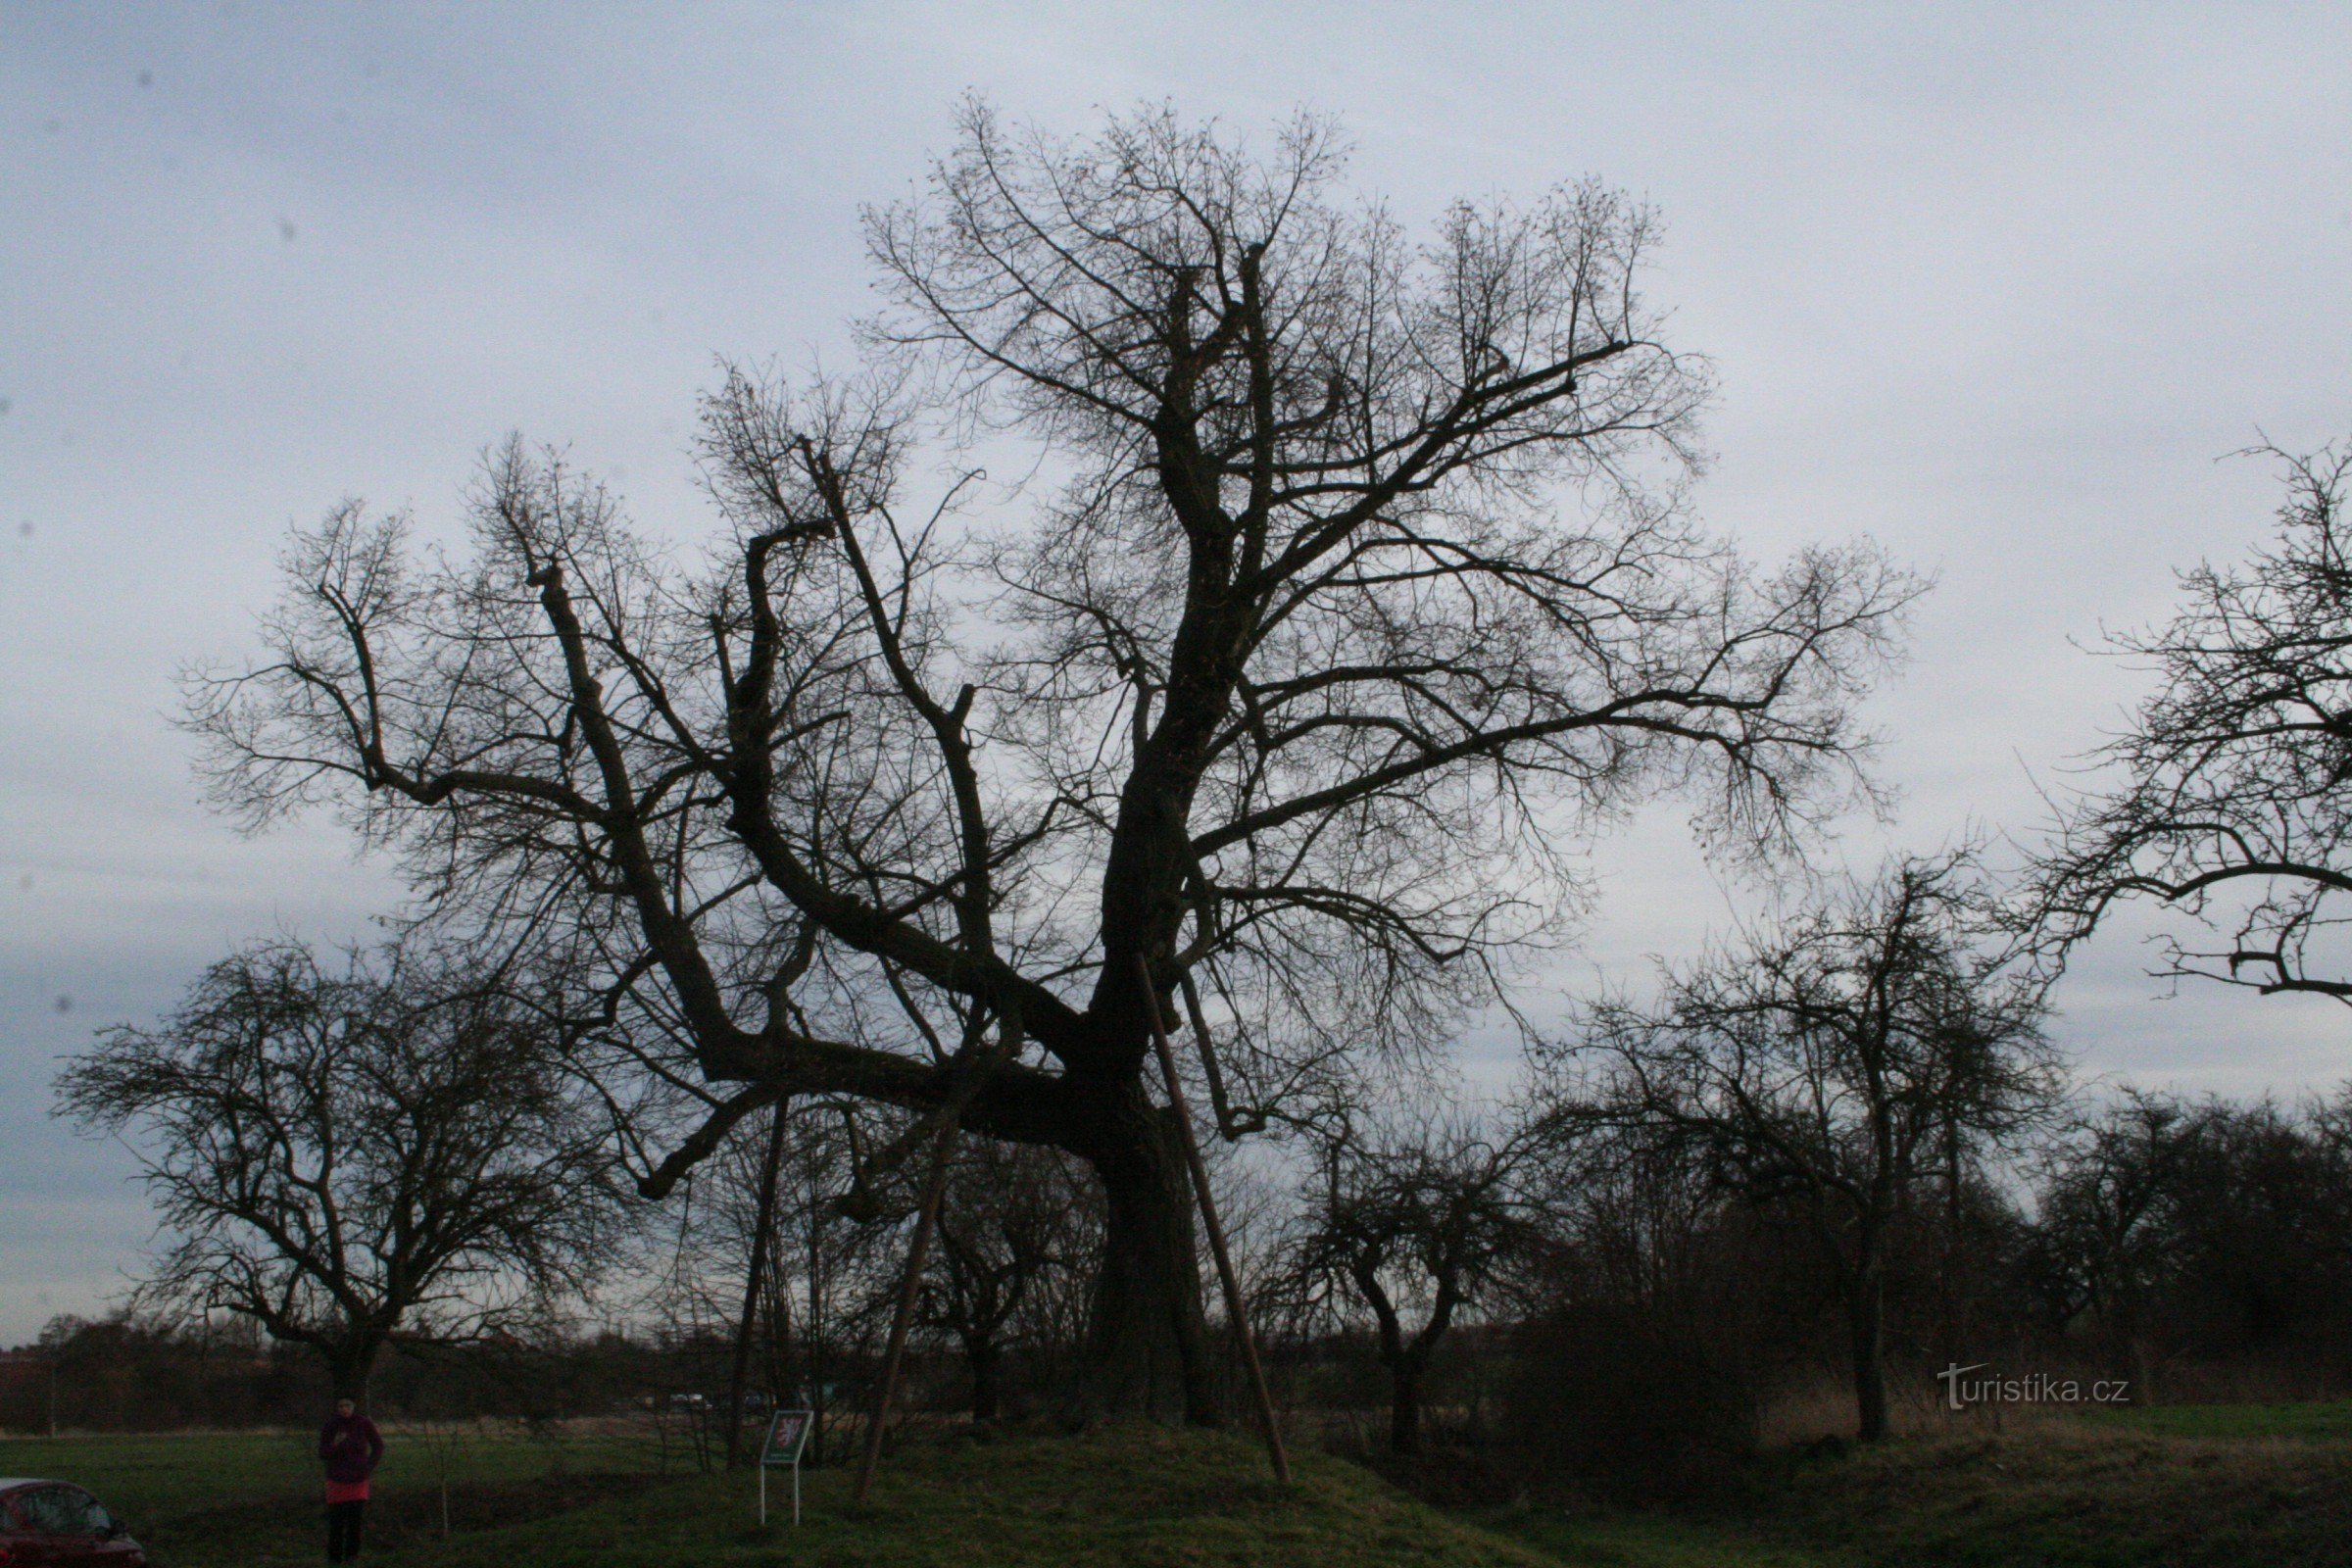 Αναμνηστικό δέντρο ασβέστη στο Drahelčice